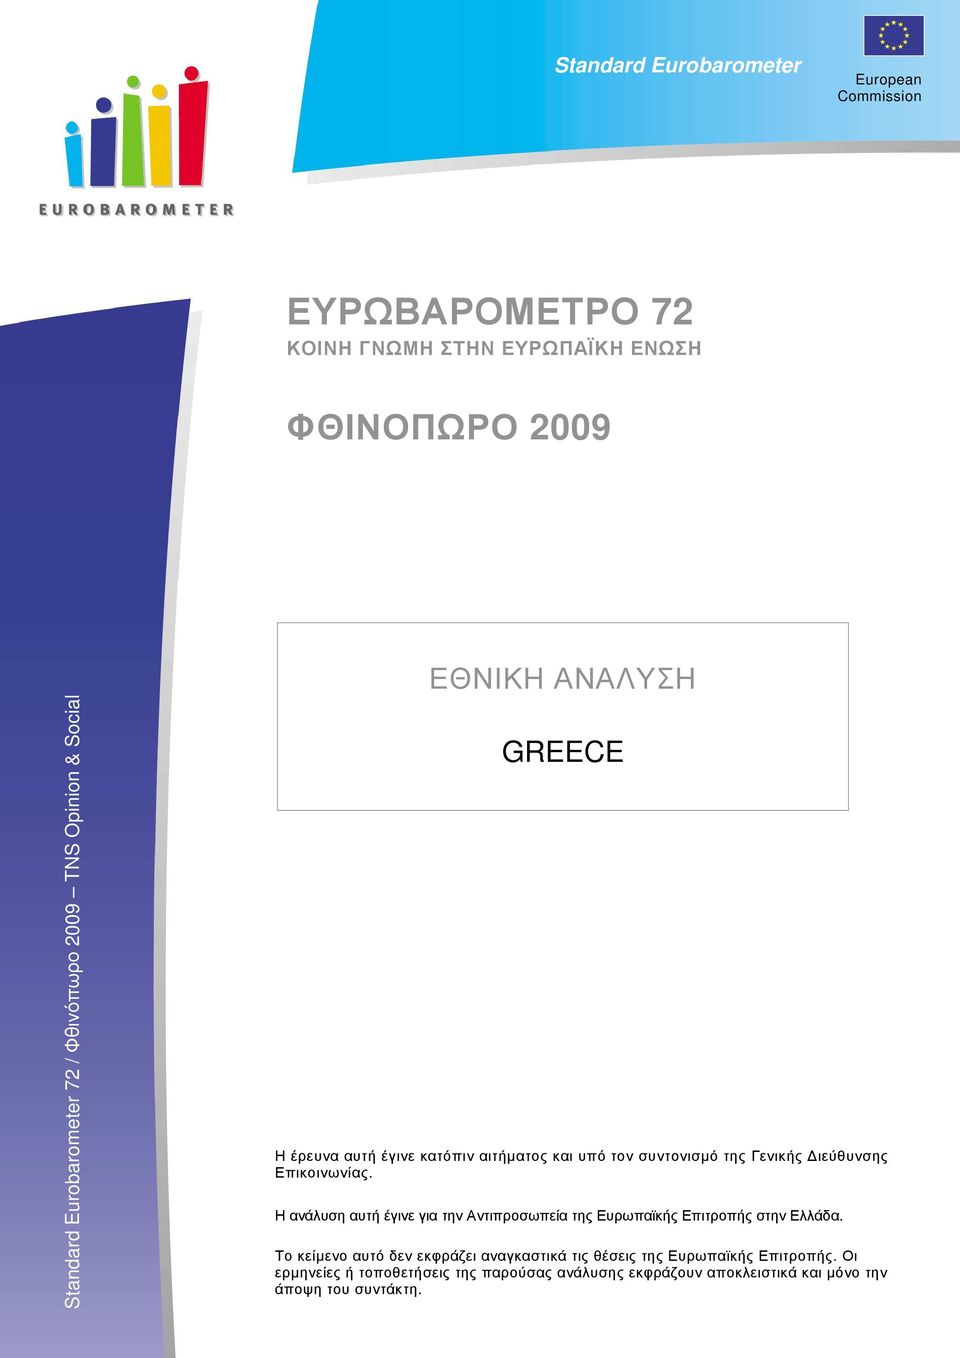 Επικοινωνίας. Η ανάλυση αυτή έγινε για την Αντιπροσωπεία της Ευρωπαϊκής Επιτροπής στην Ελλάδα.